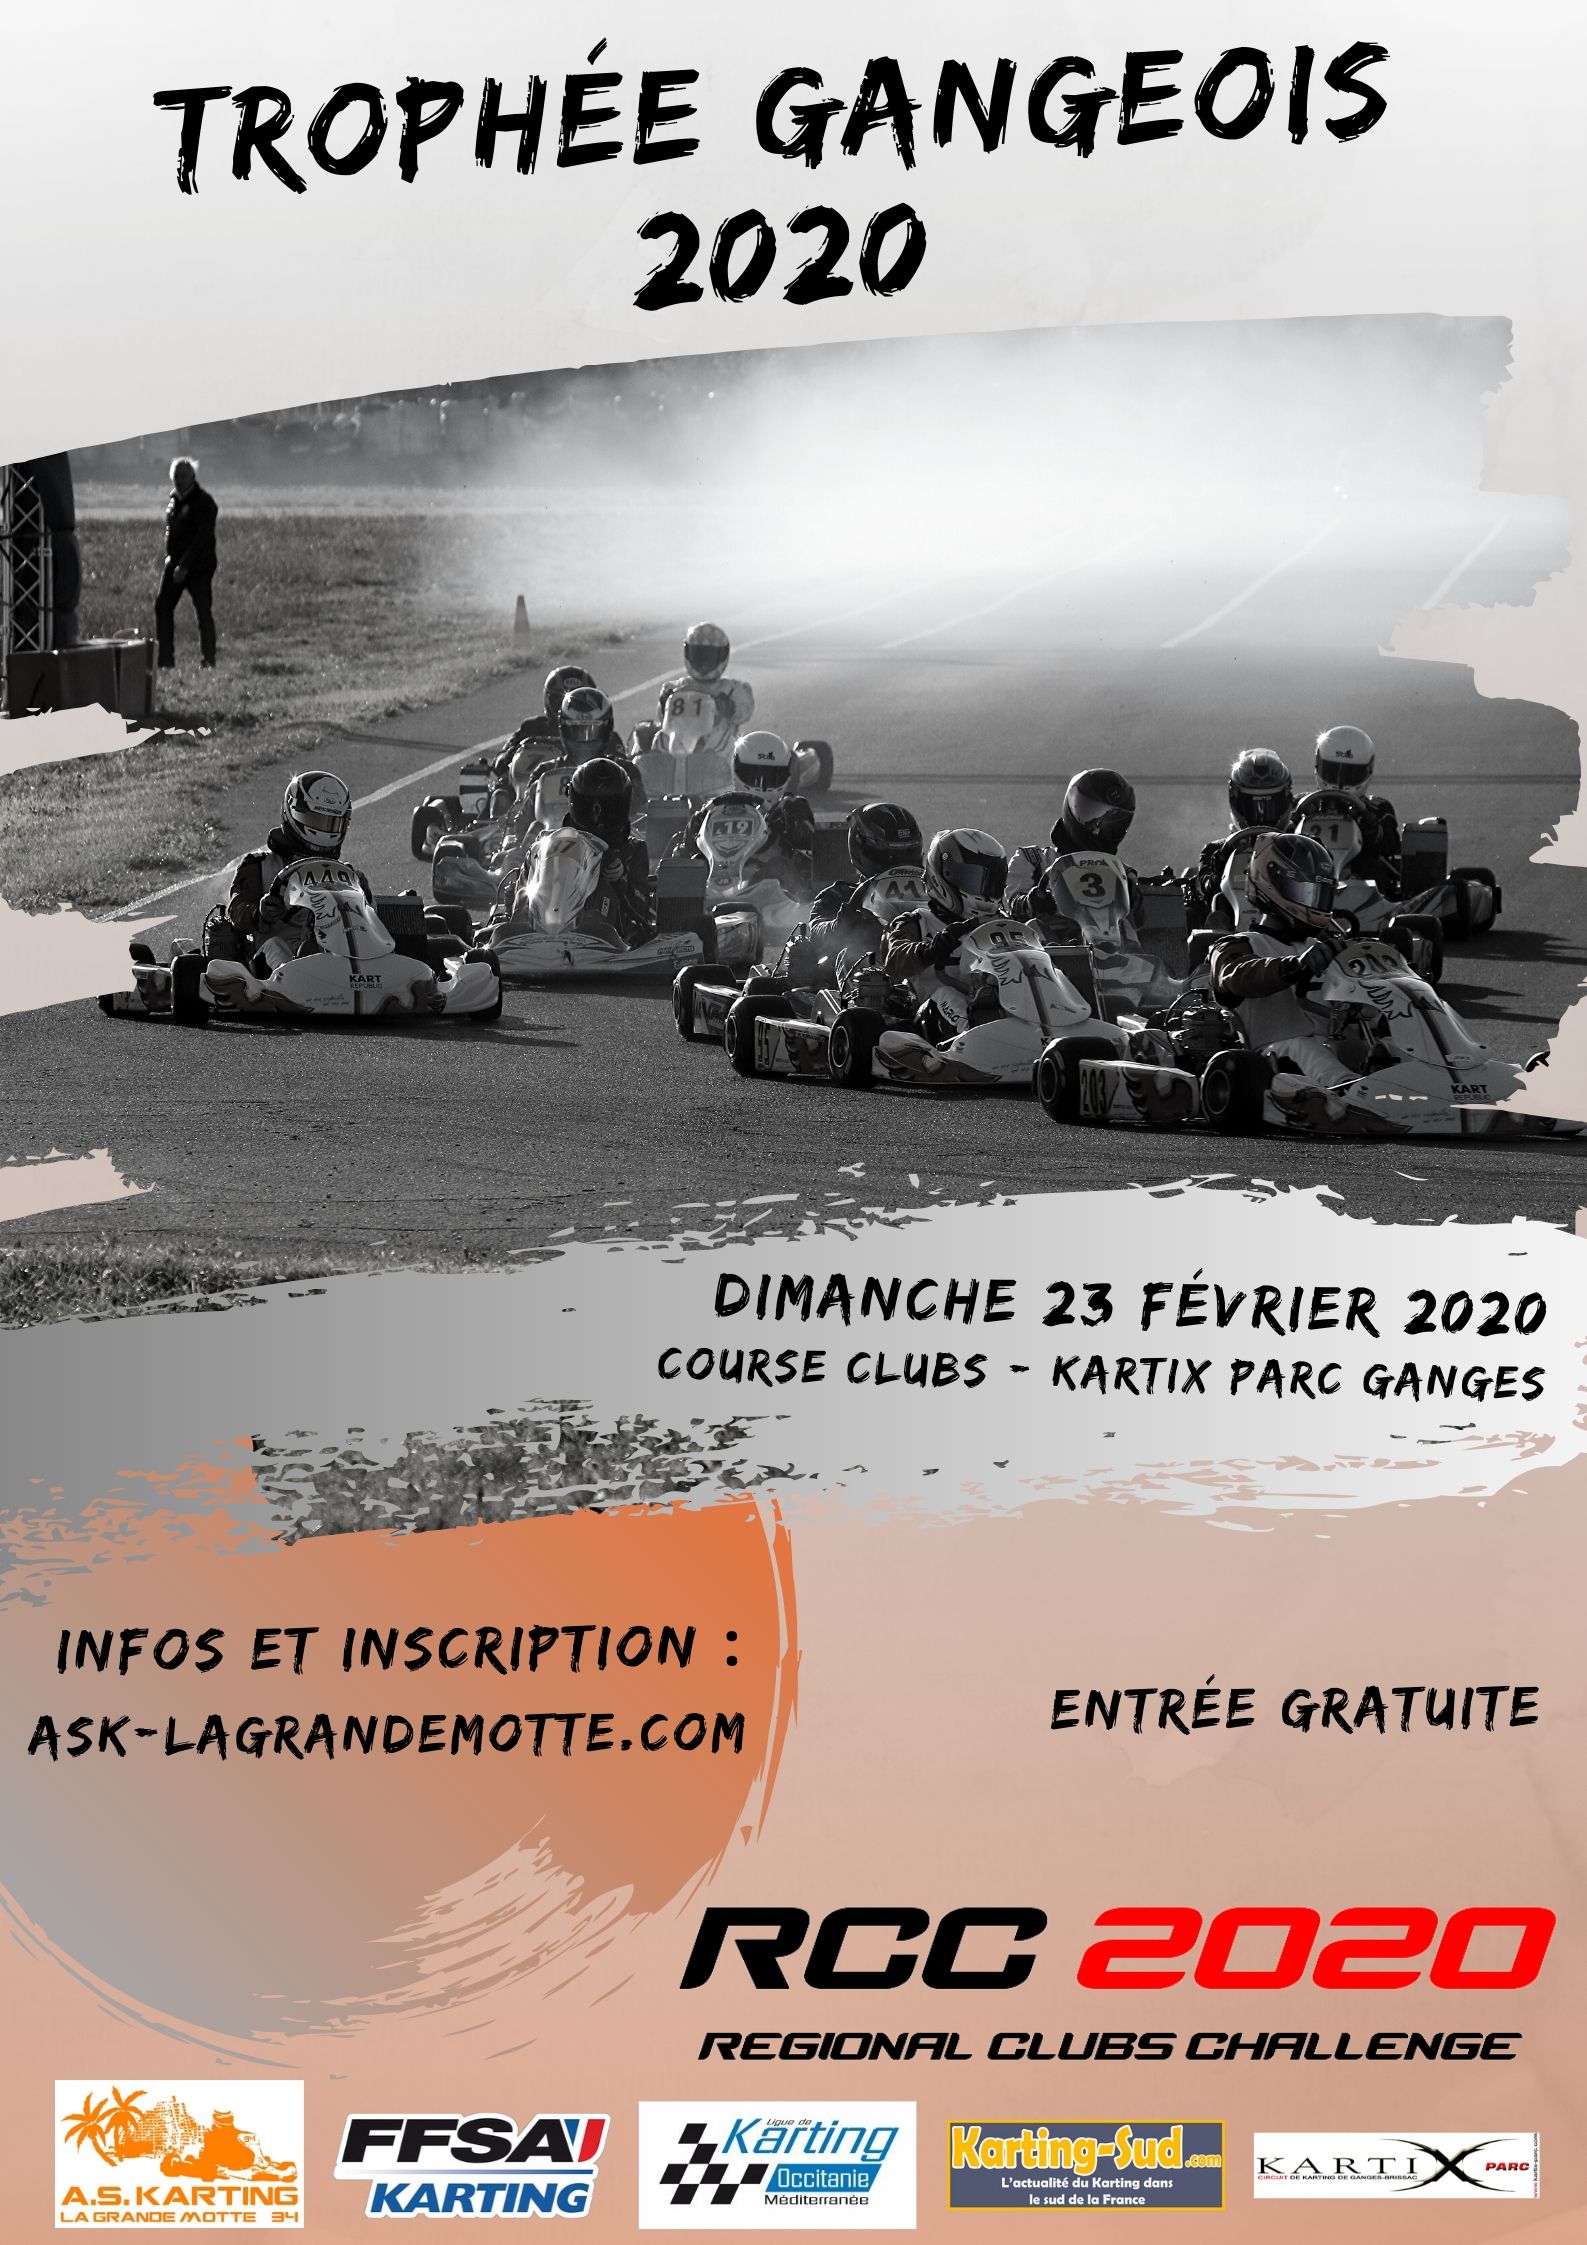 Trophée Gangeois 2020